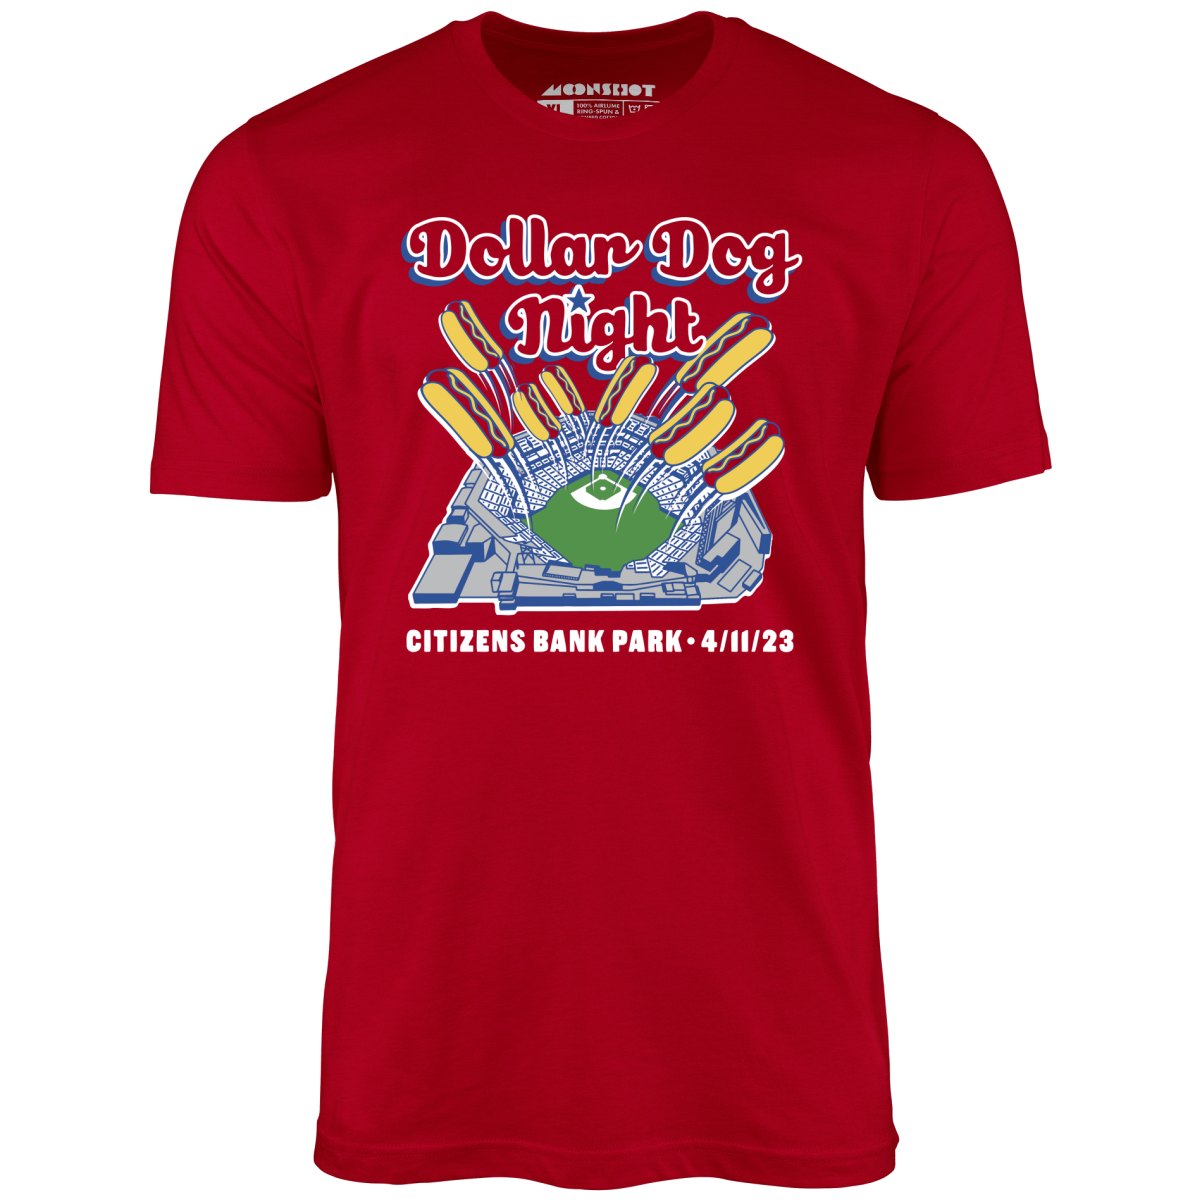 Dollar Dog Night - Unisex T-Shirt